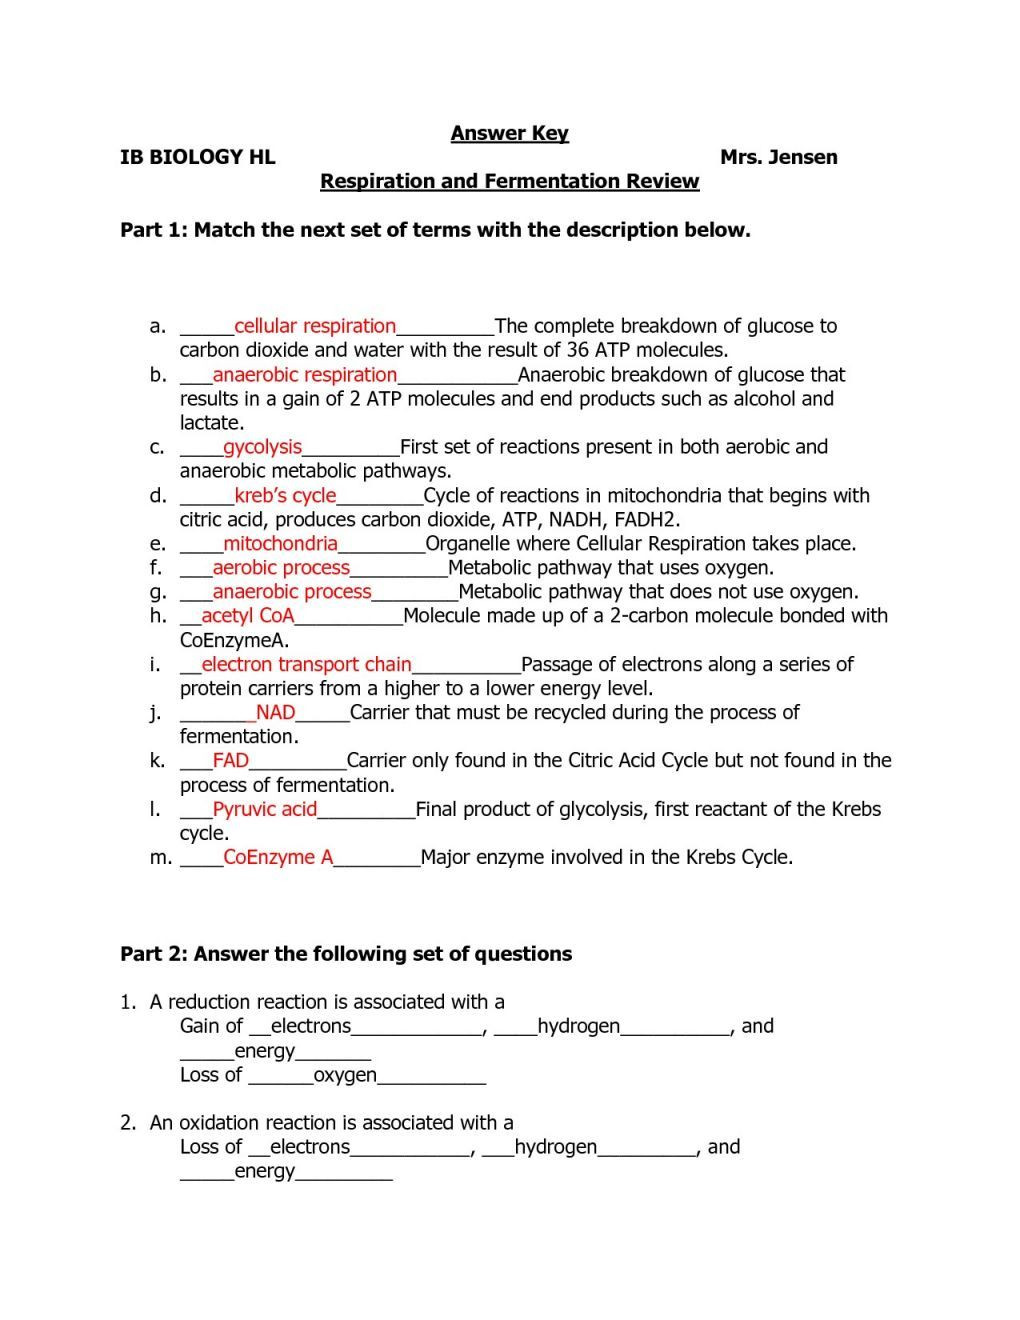 Macromolecules Worksheet Answer Key Macromolecules and Nutrition Label Worksheet Answers Nidecmege